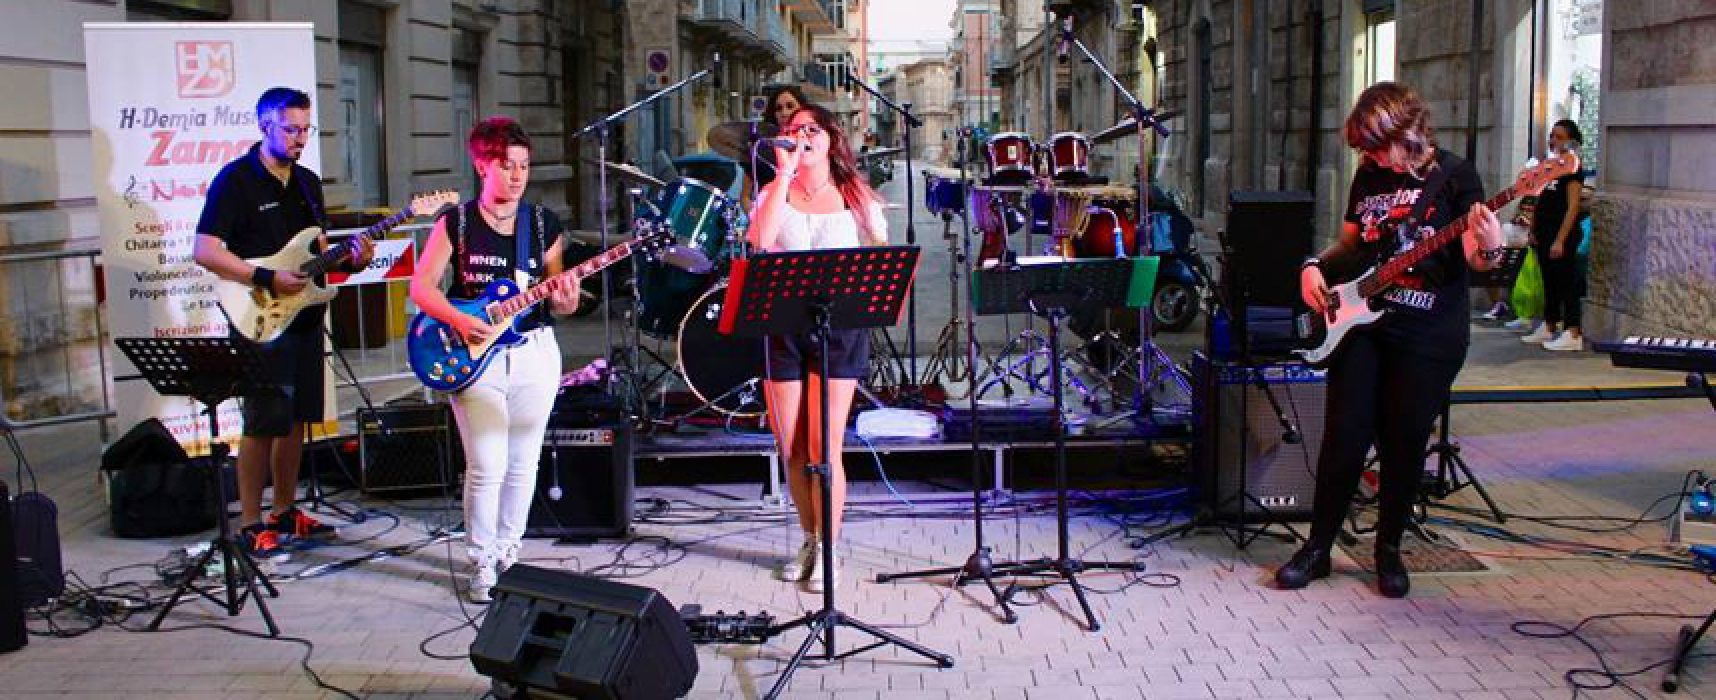 Storm Born, la band tutta rosa presenta il suo lavoro made in Bisceglie / VIDEO